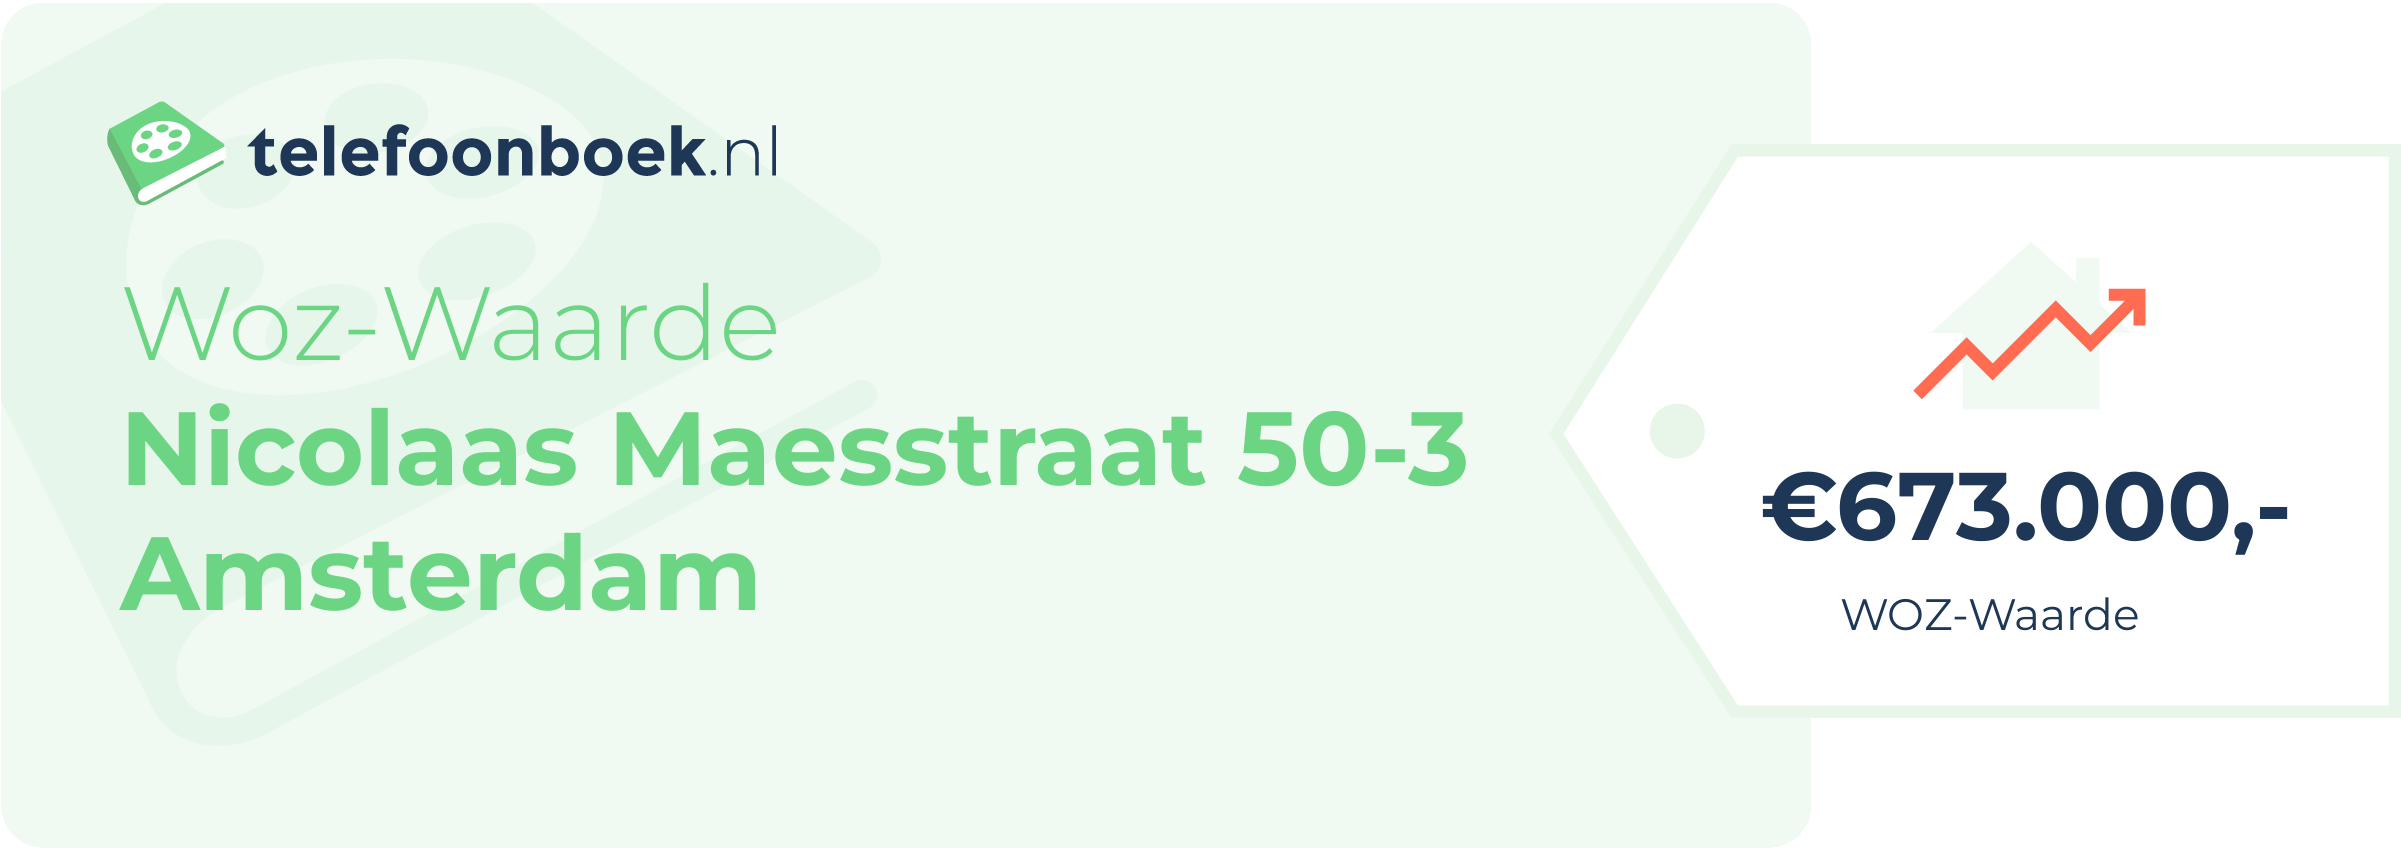 WOZ-waarde Nicolaas Maesstraat 50-3 Amsterdam